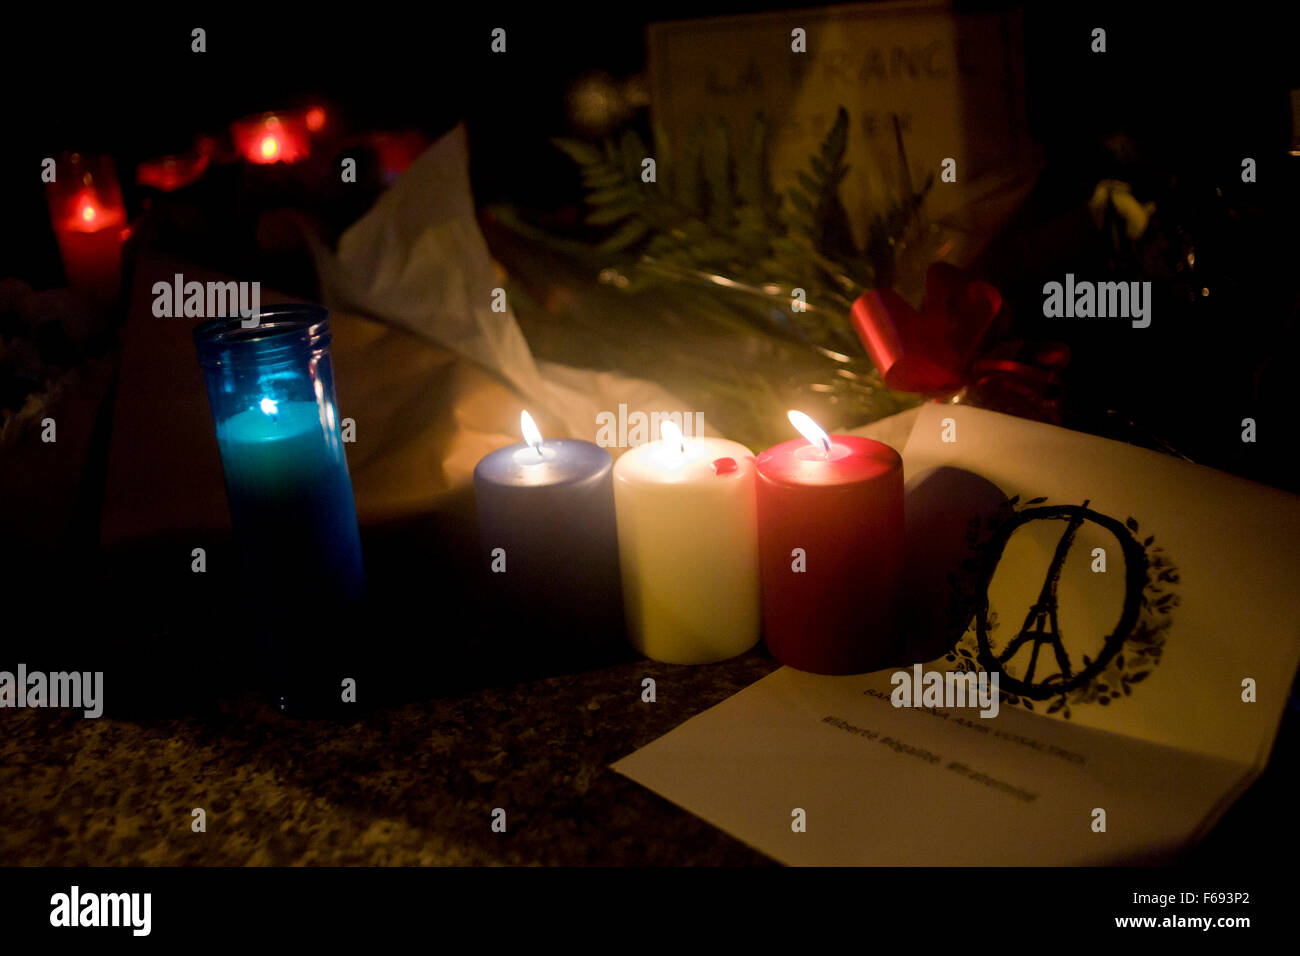 Bougies placées en mémoire des victimes des attentats à Paris Consulat Général de France à Barcelone, Espagne, le 14 novembre, 2015. Plus de 120 personnes ont été tuées dans une série d'attentats à Paris le 13 novembre, selon les responsables français. Banque D'Images